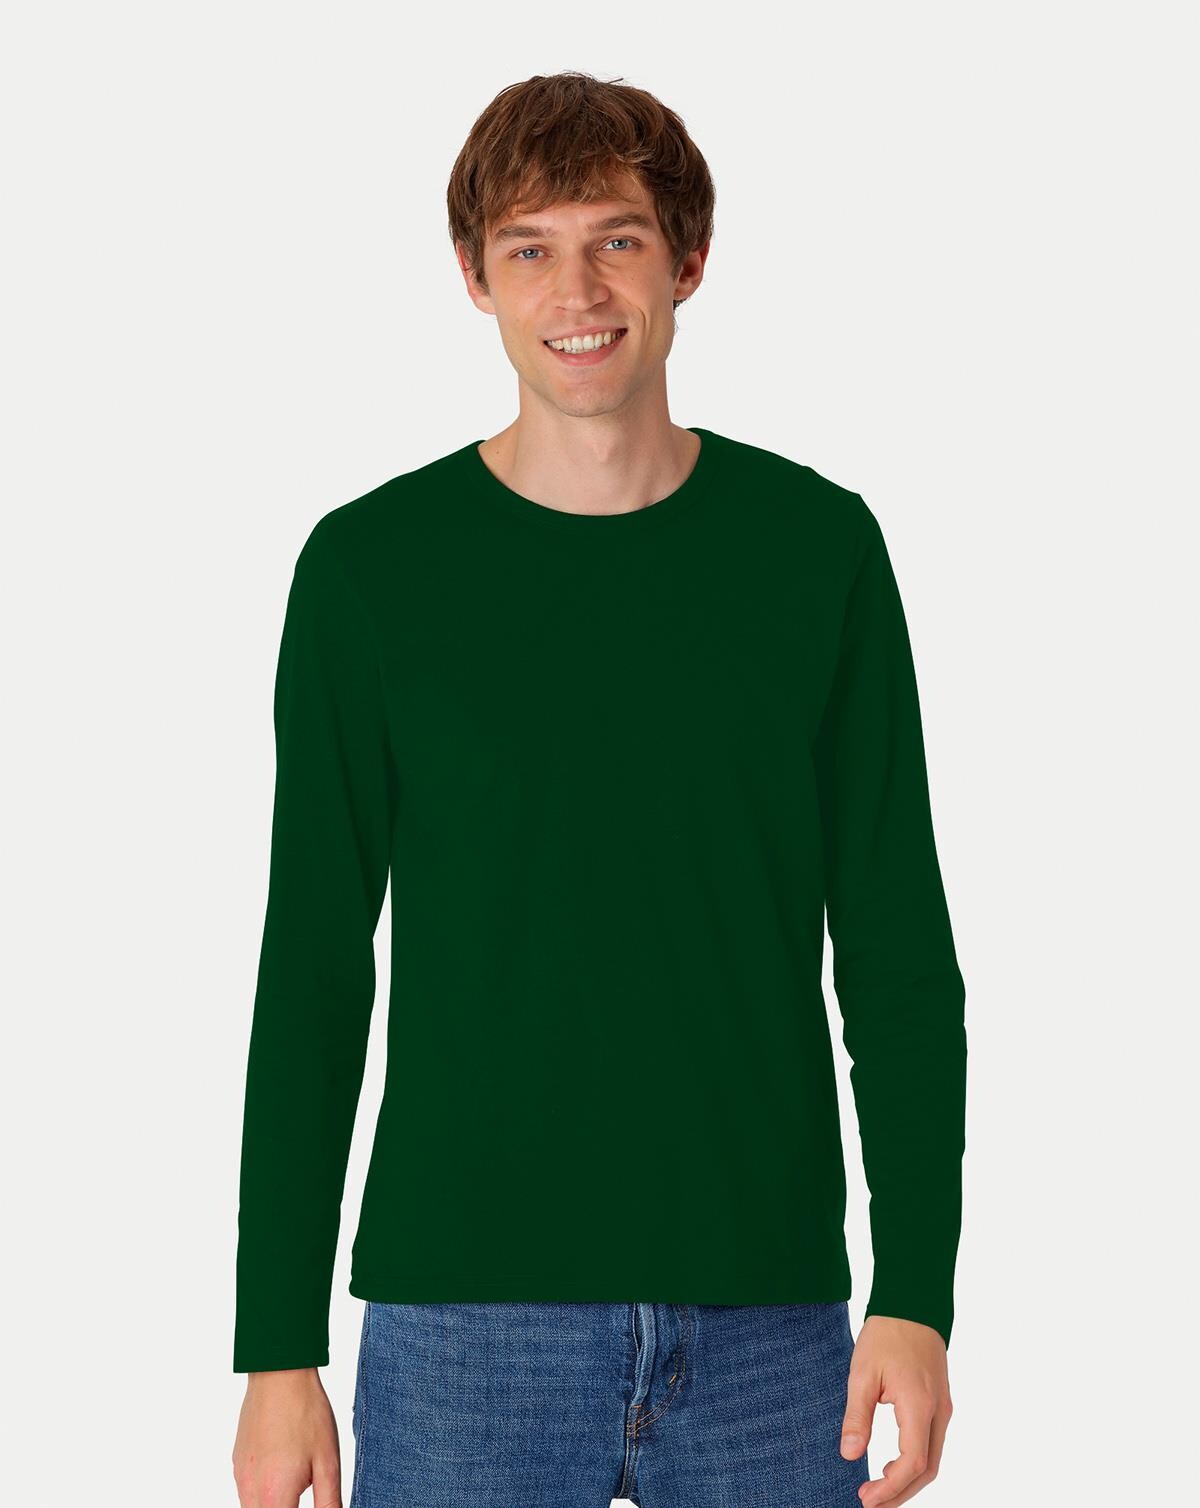 Neutral Organic - Mens Long Sleeve T-shirt (Flaskegrøn, S)